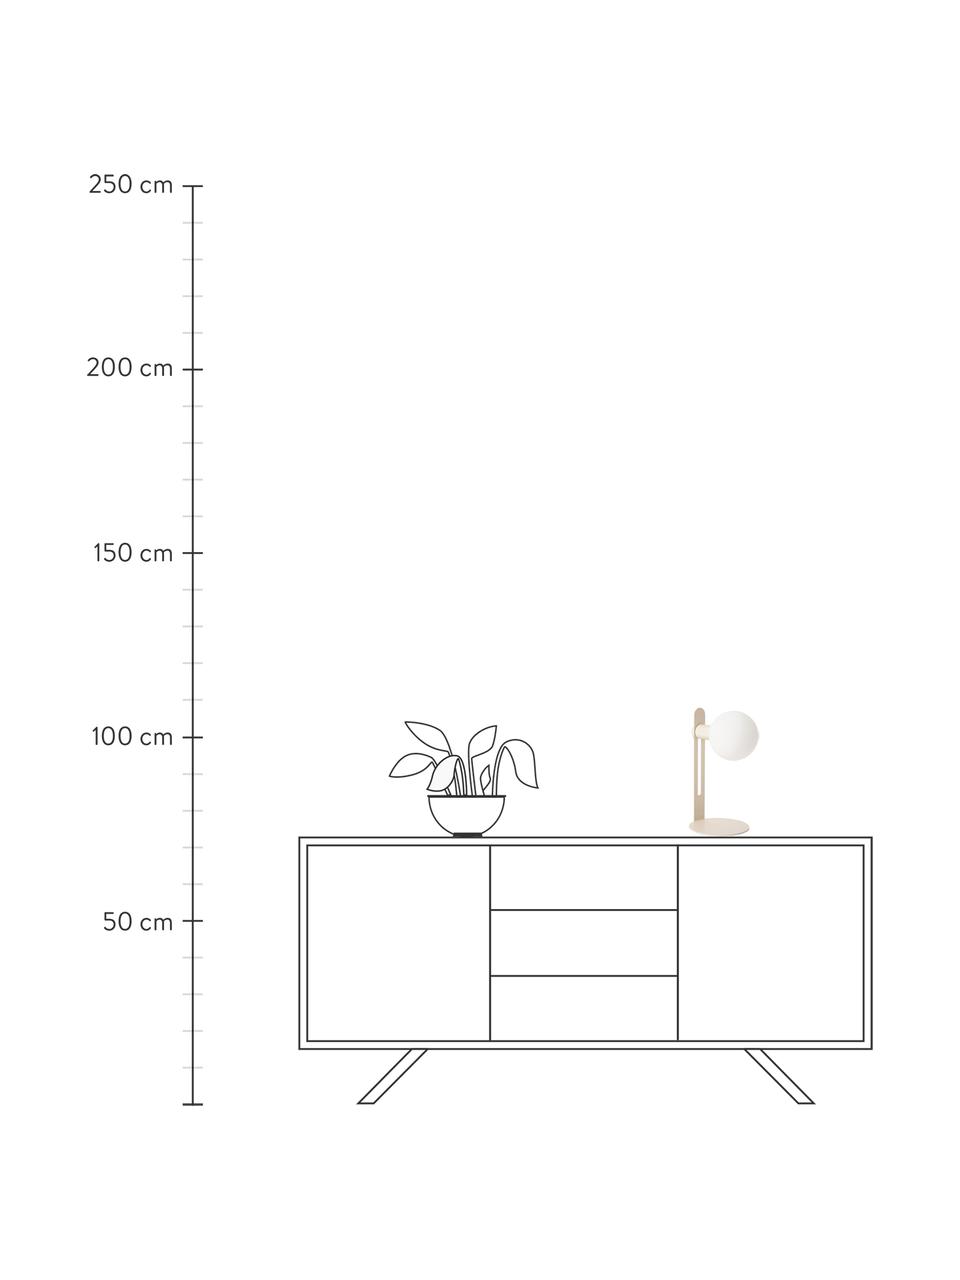 Lámpara de mesa pequeña Fely, Pantalla: vidrio, Estructura: metal recubierto, Cable: plástico, Beige, Ø 14 x Al 35 cm